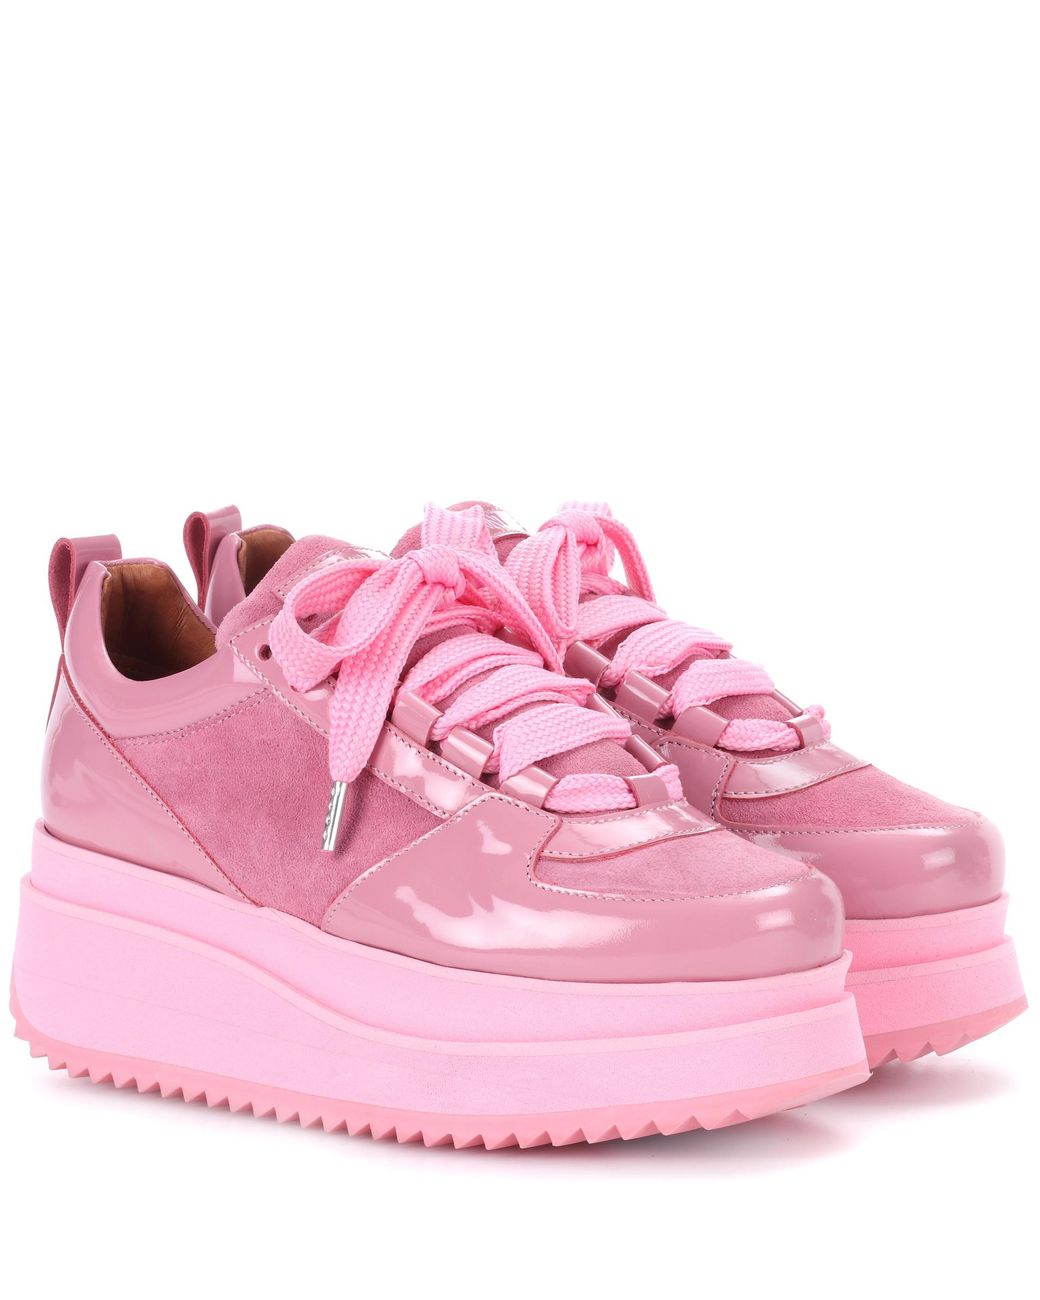 Ganni Edel Suede Platform Sneakers in Pink | Lyst